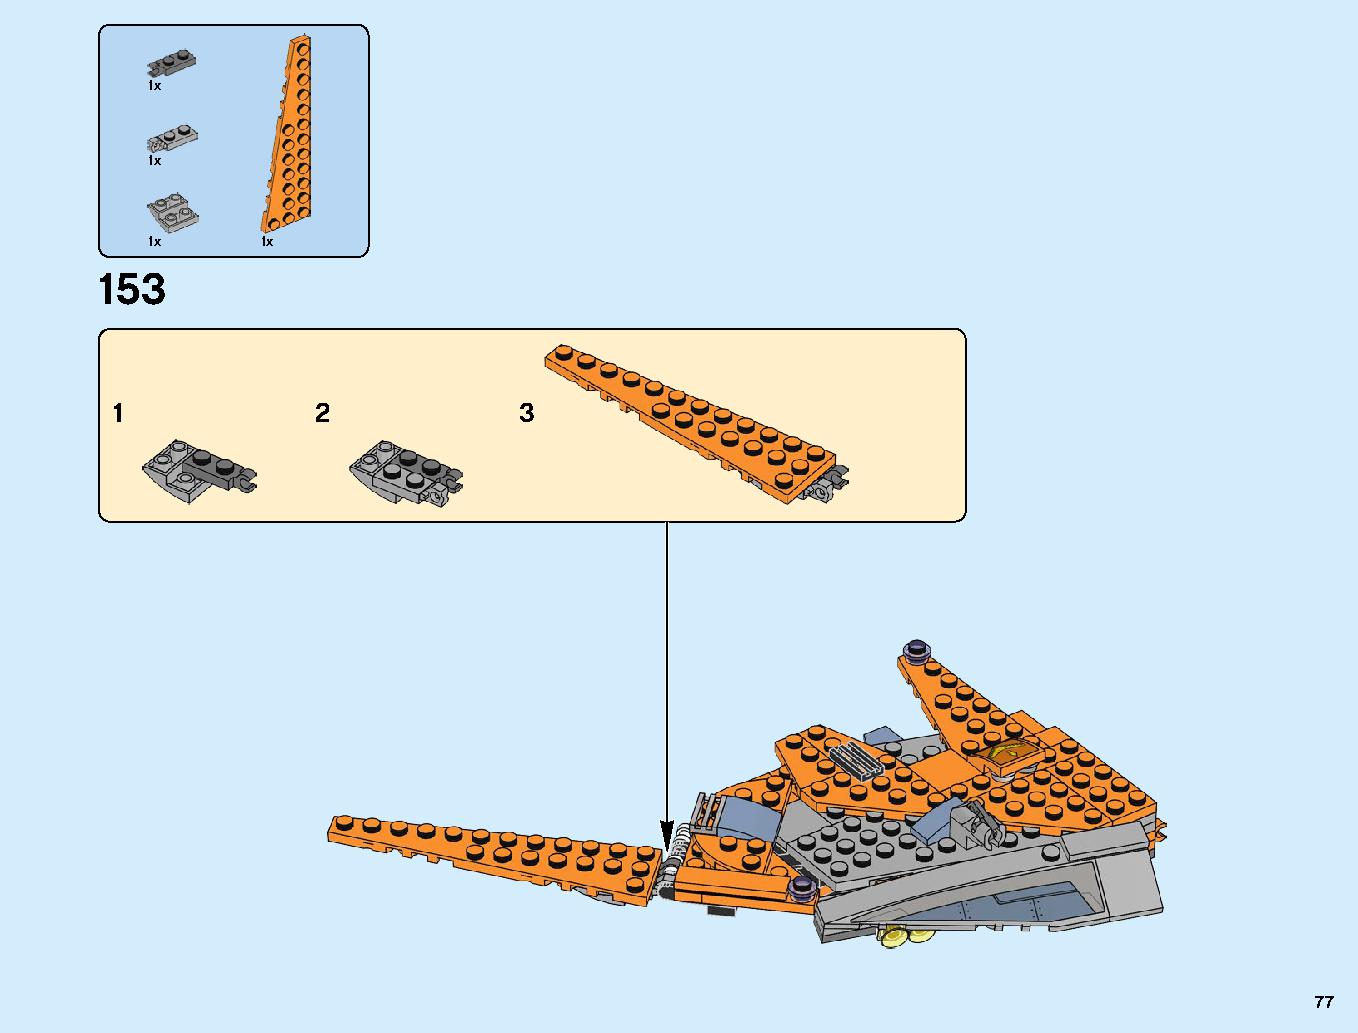 어벤져스 타노스: 최후의 전투 76107 레고 세트 제품정보 레고 조립설명서 77 page